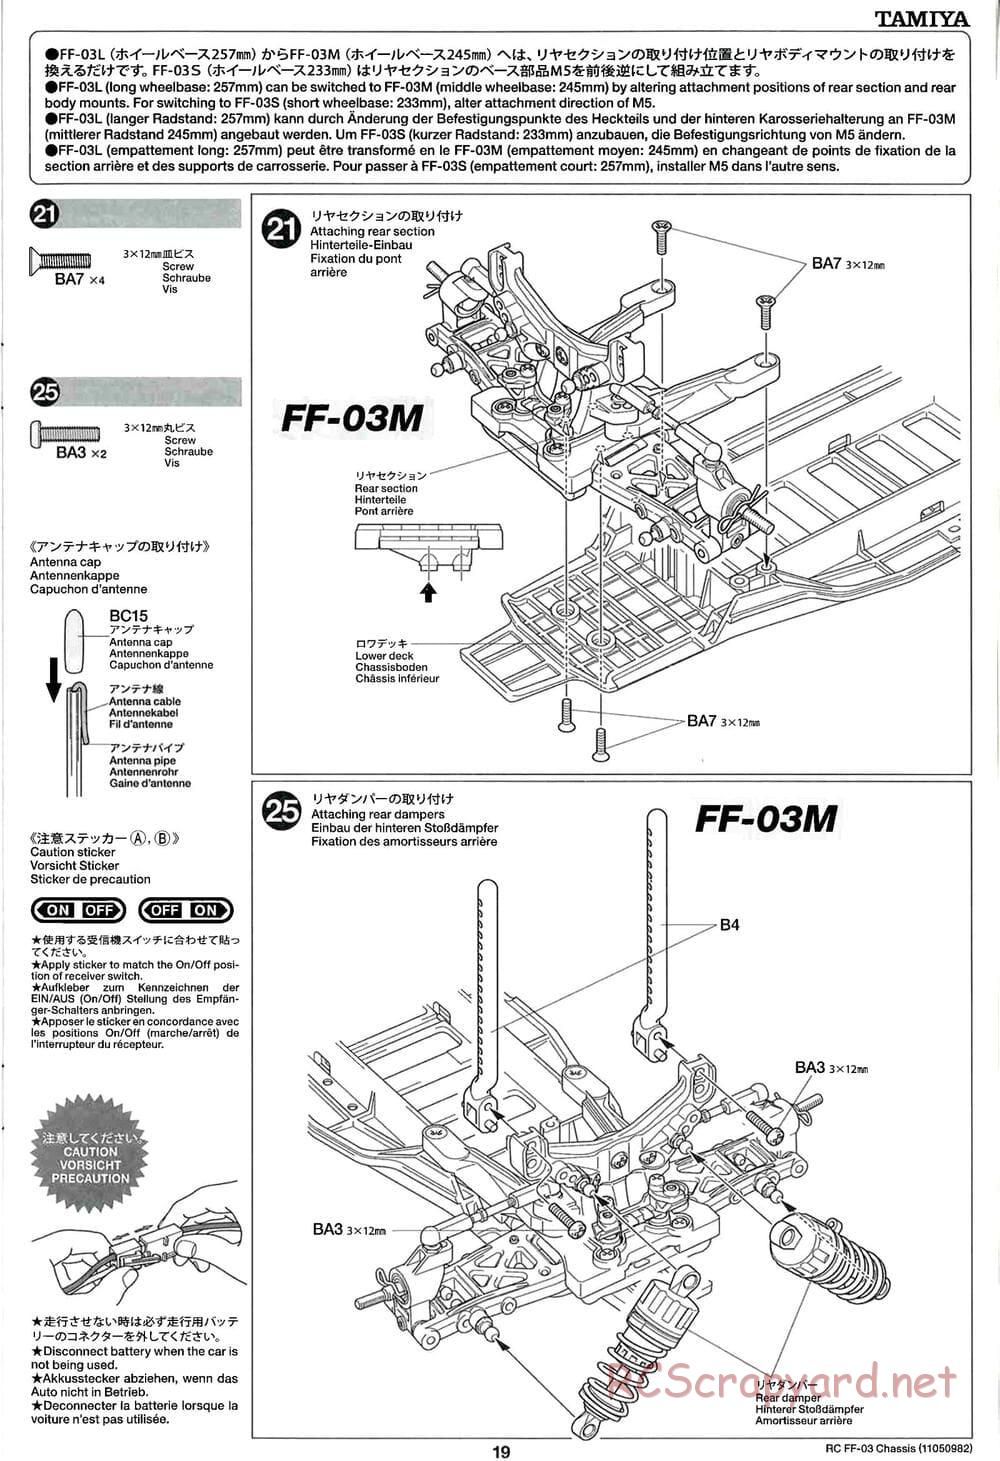 Tamiya - Honda Accord Aero Custom - FF-03 Chassis - Manual - Page 19